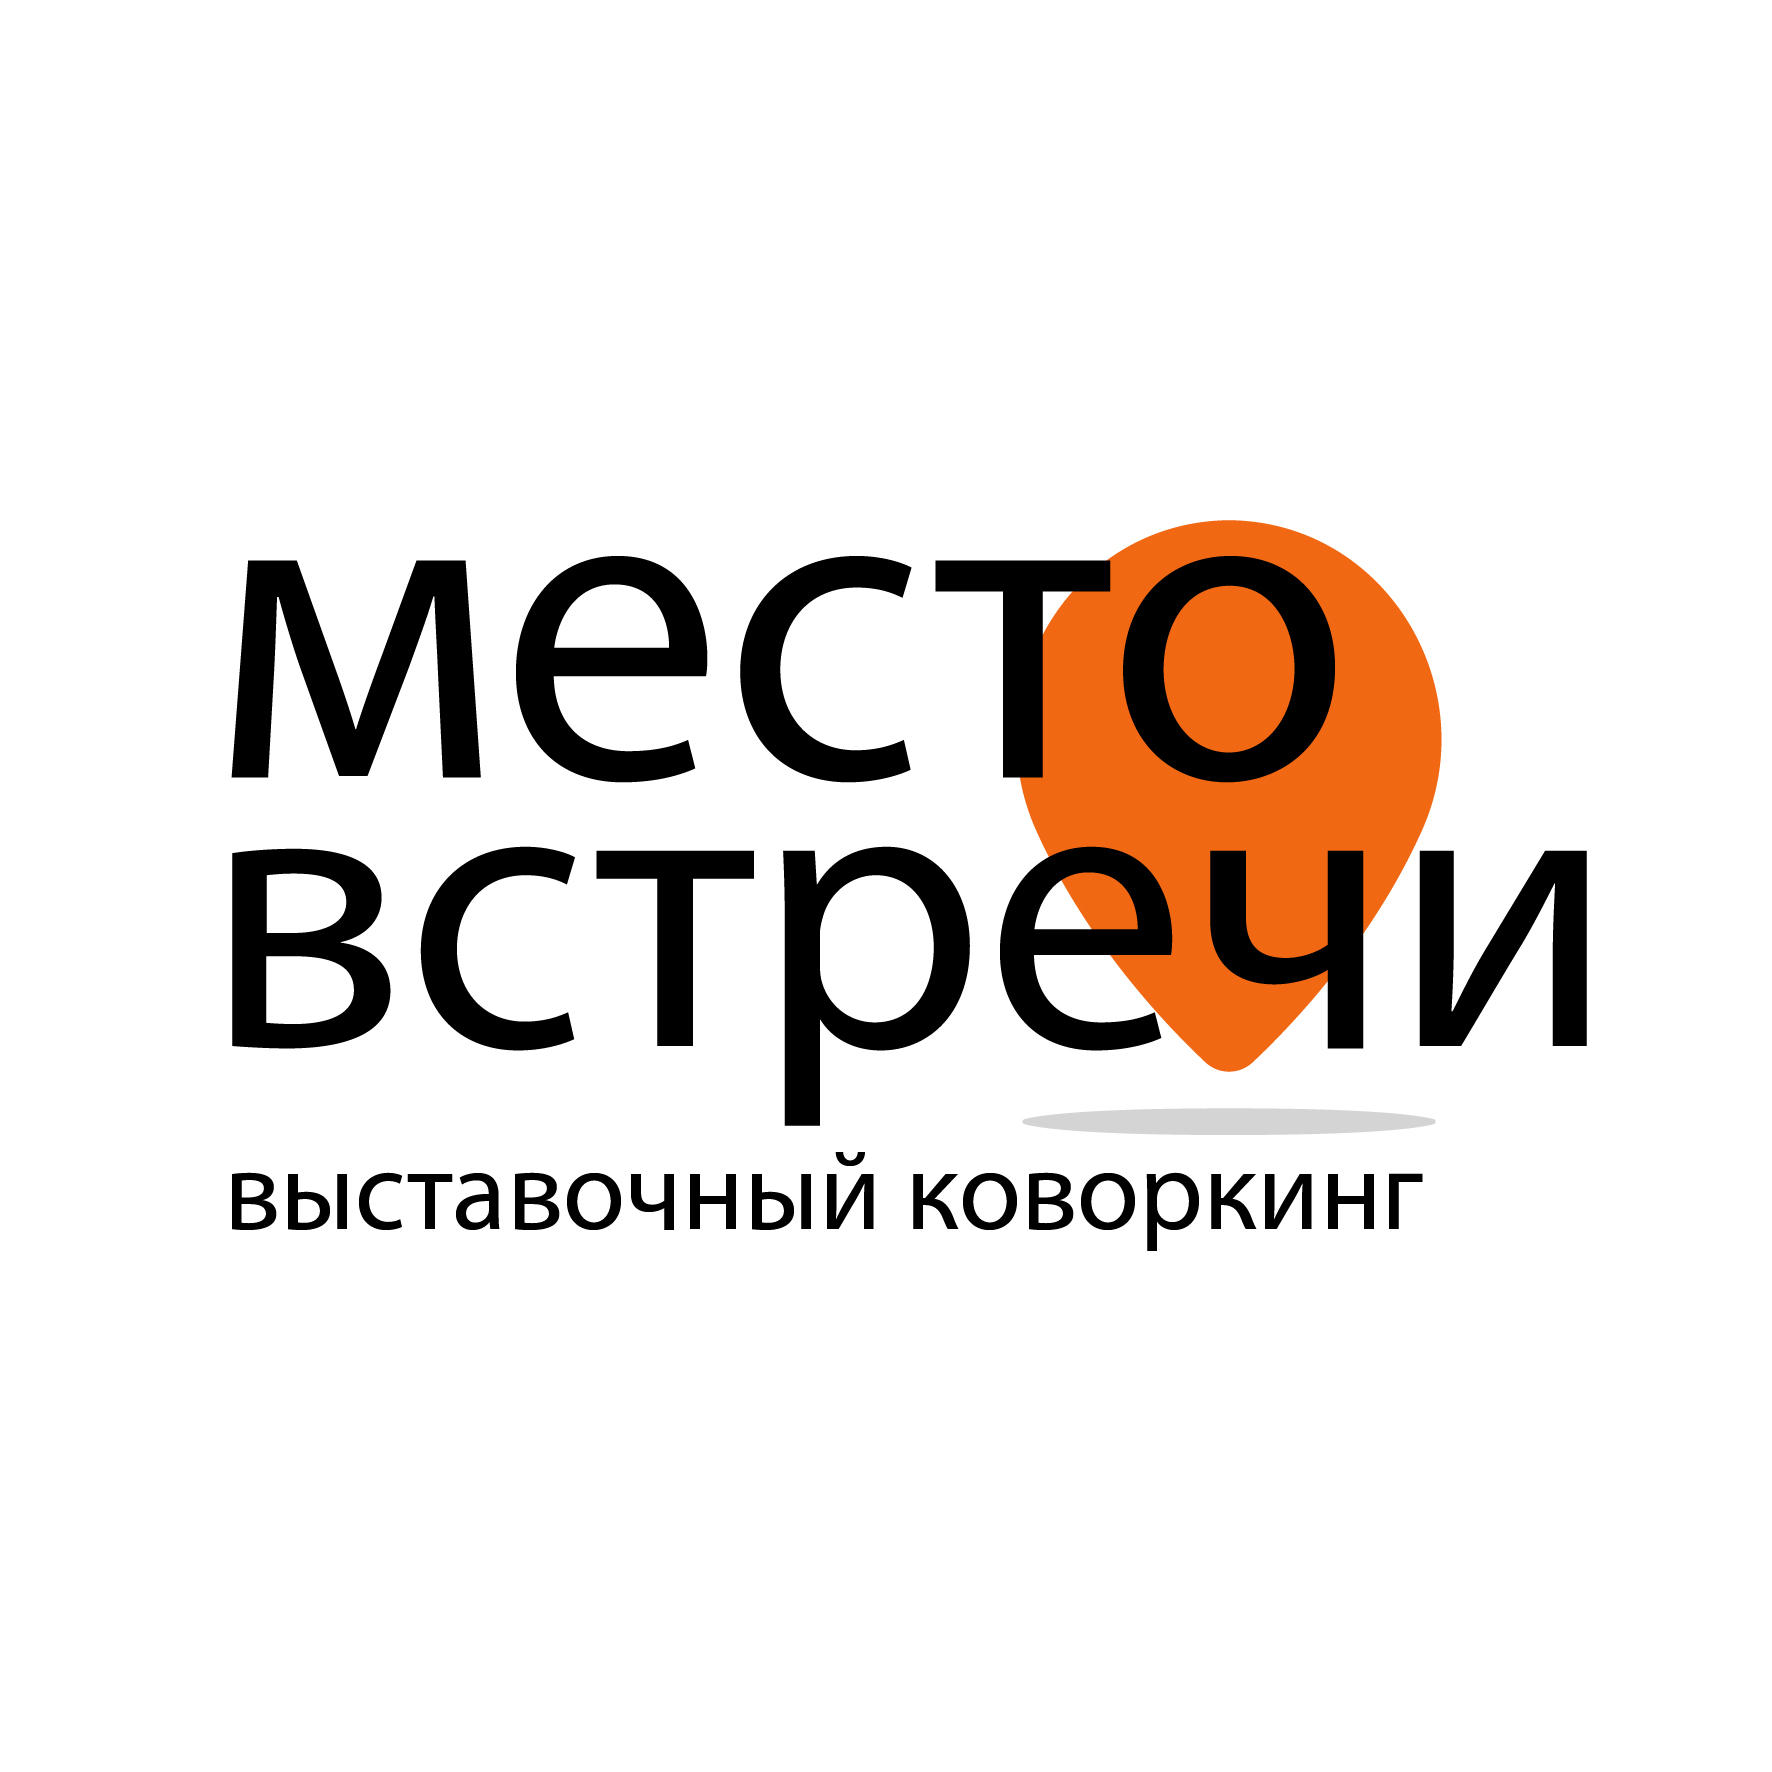 Логотип Выставочный коворкинг "Место встречи"